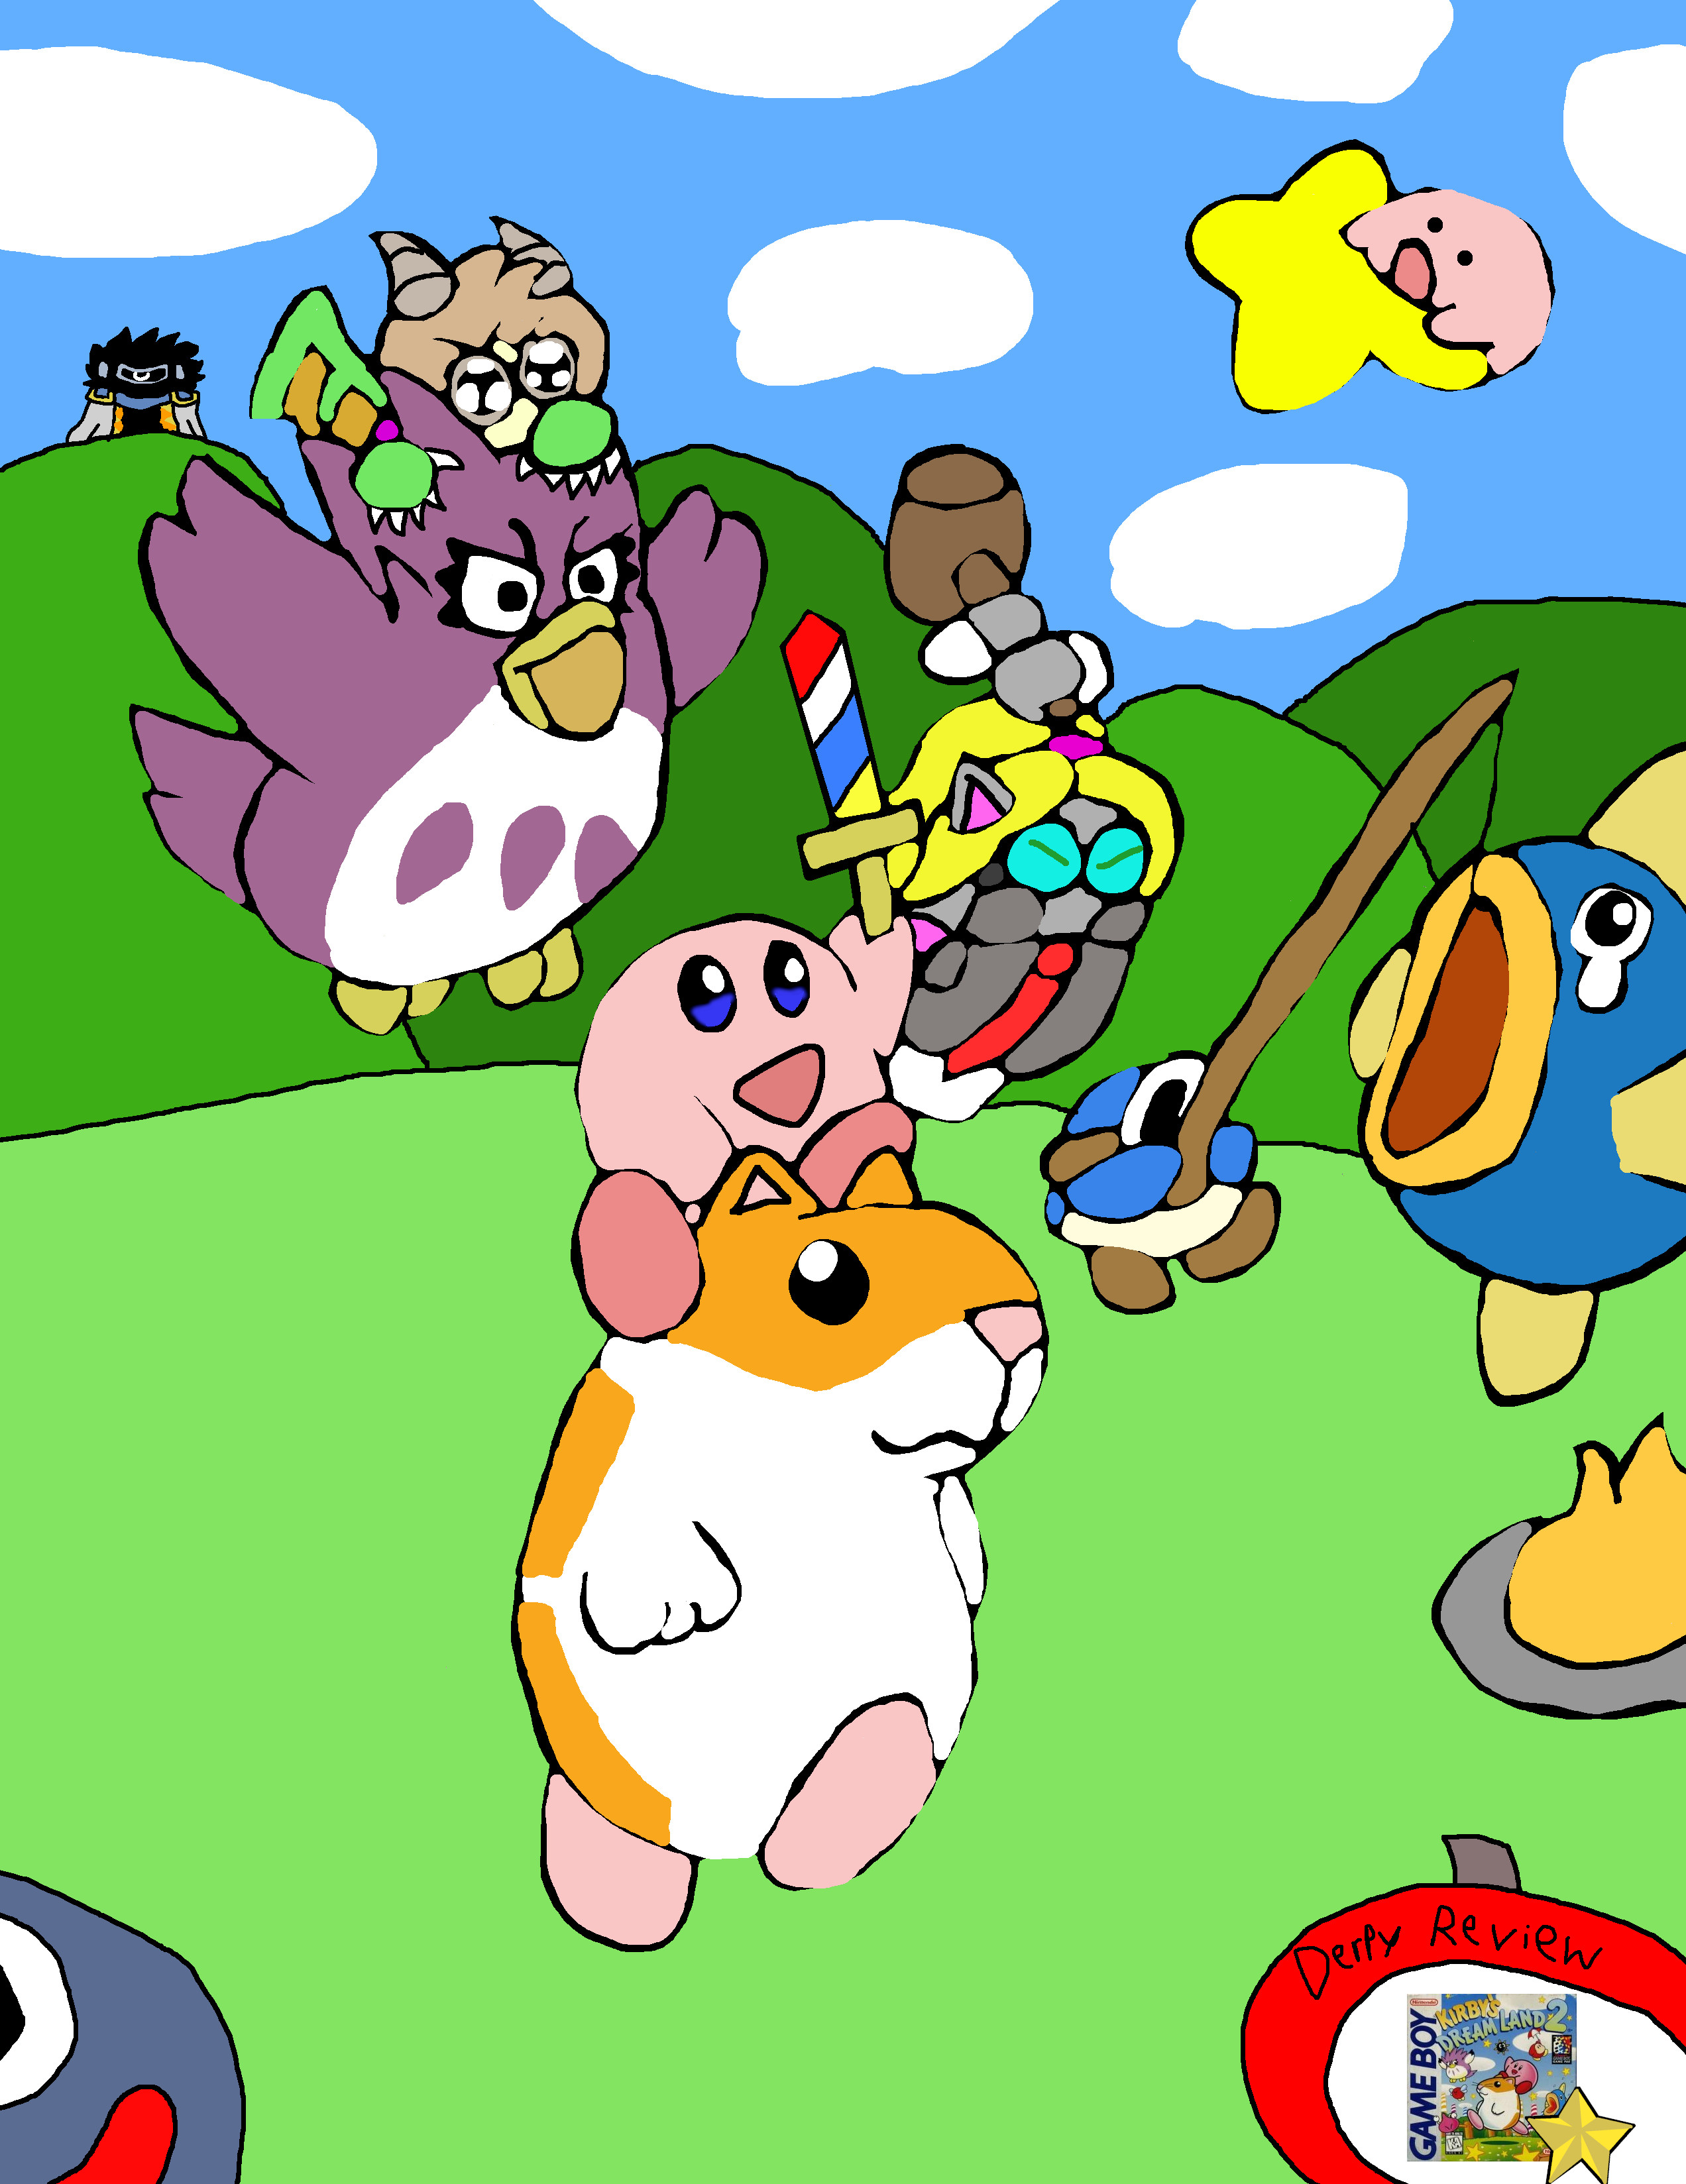 Kirby's dream land 2 final boss battle & ending 